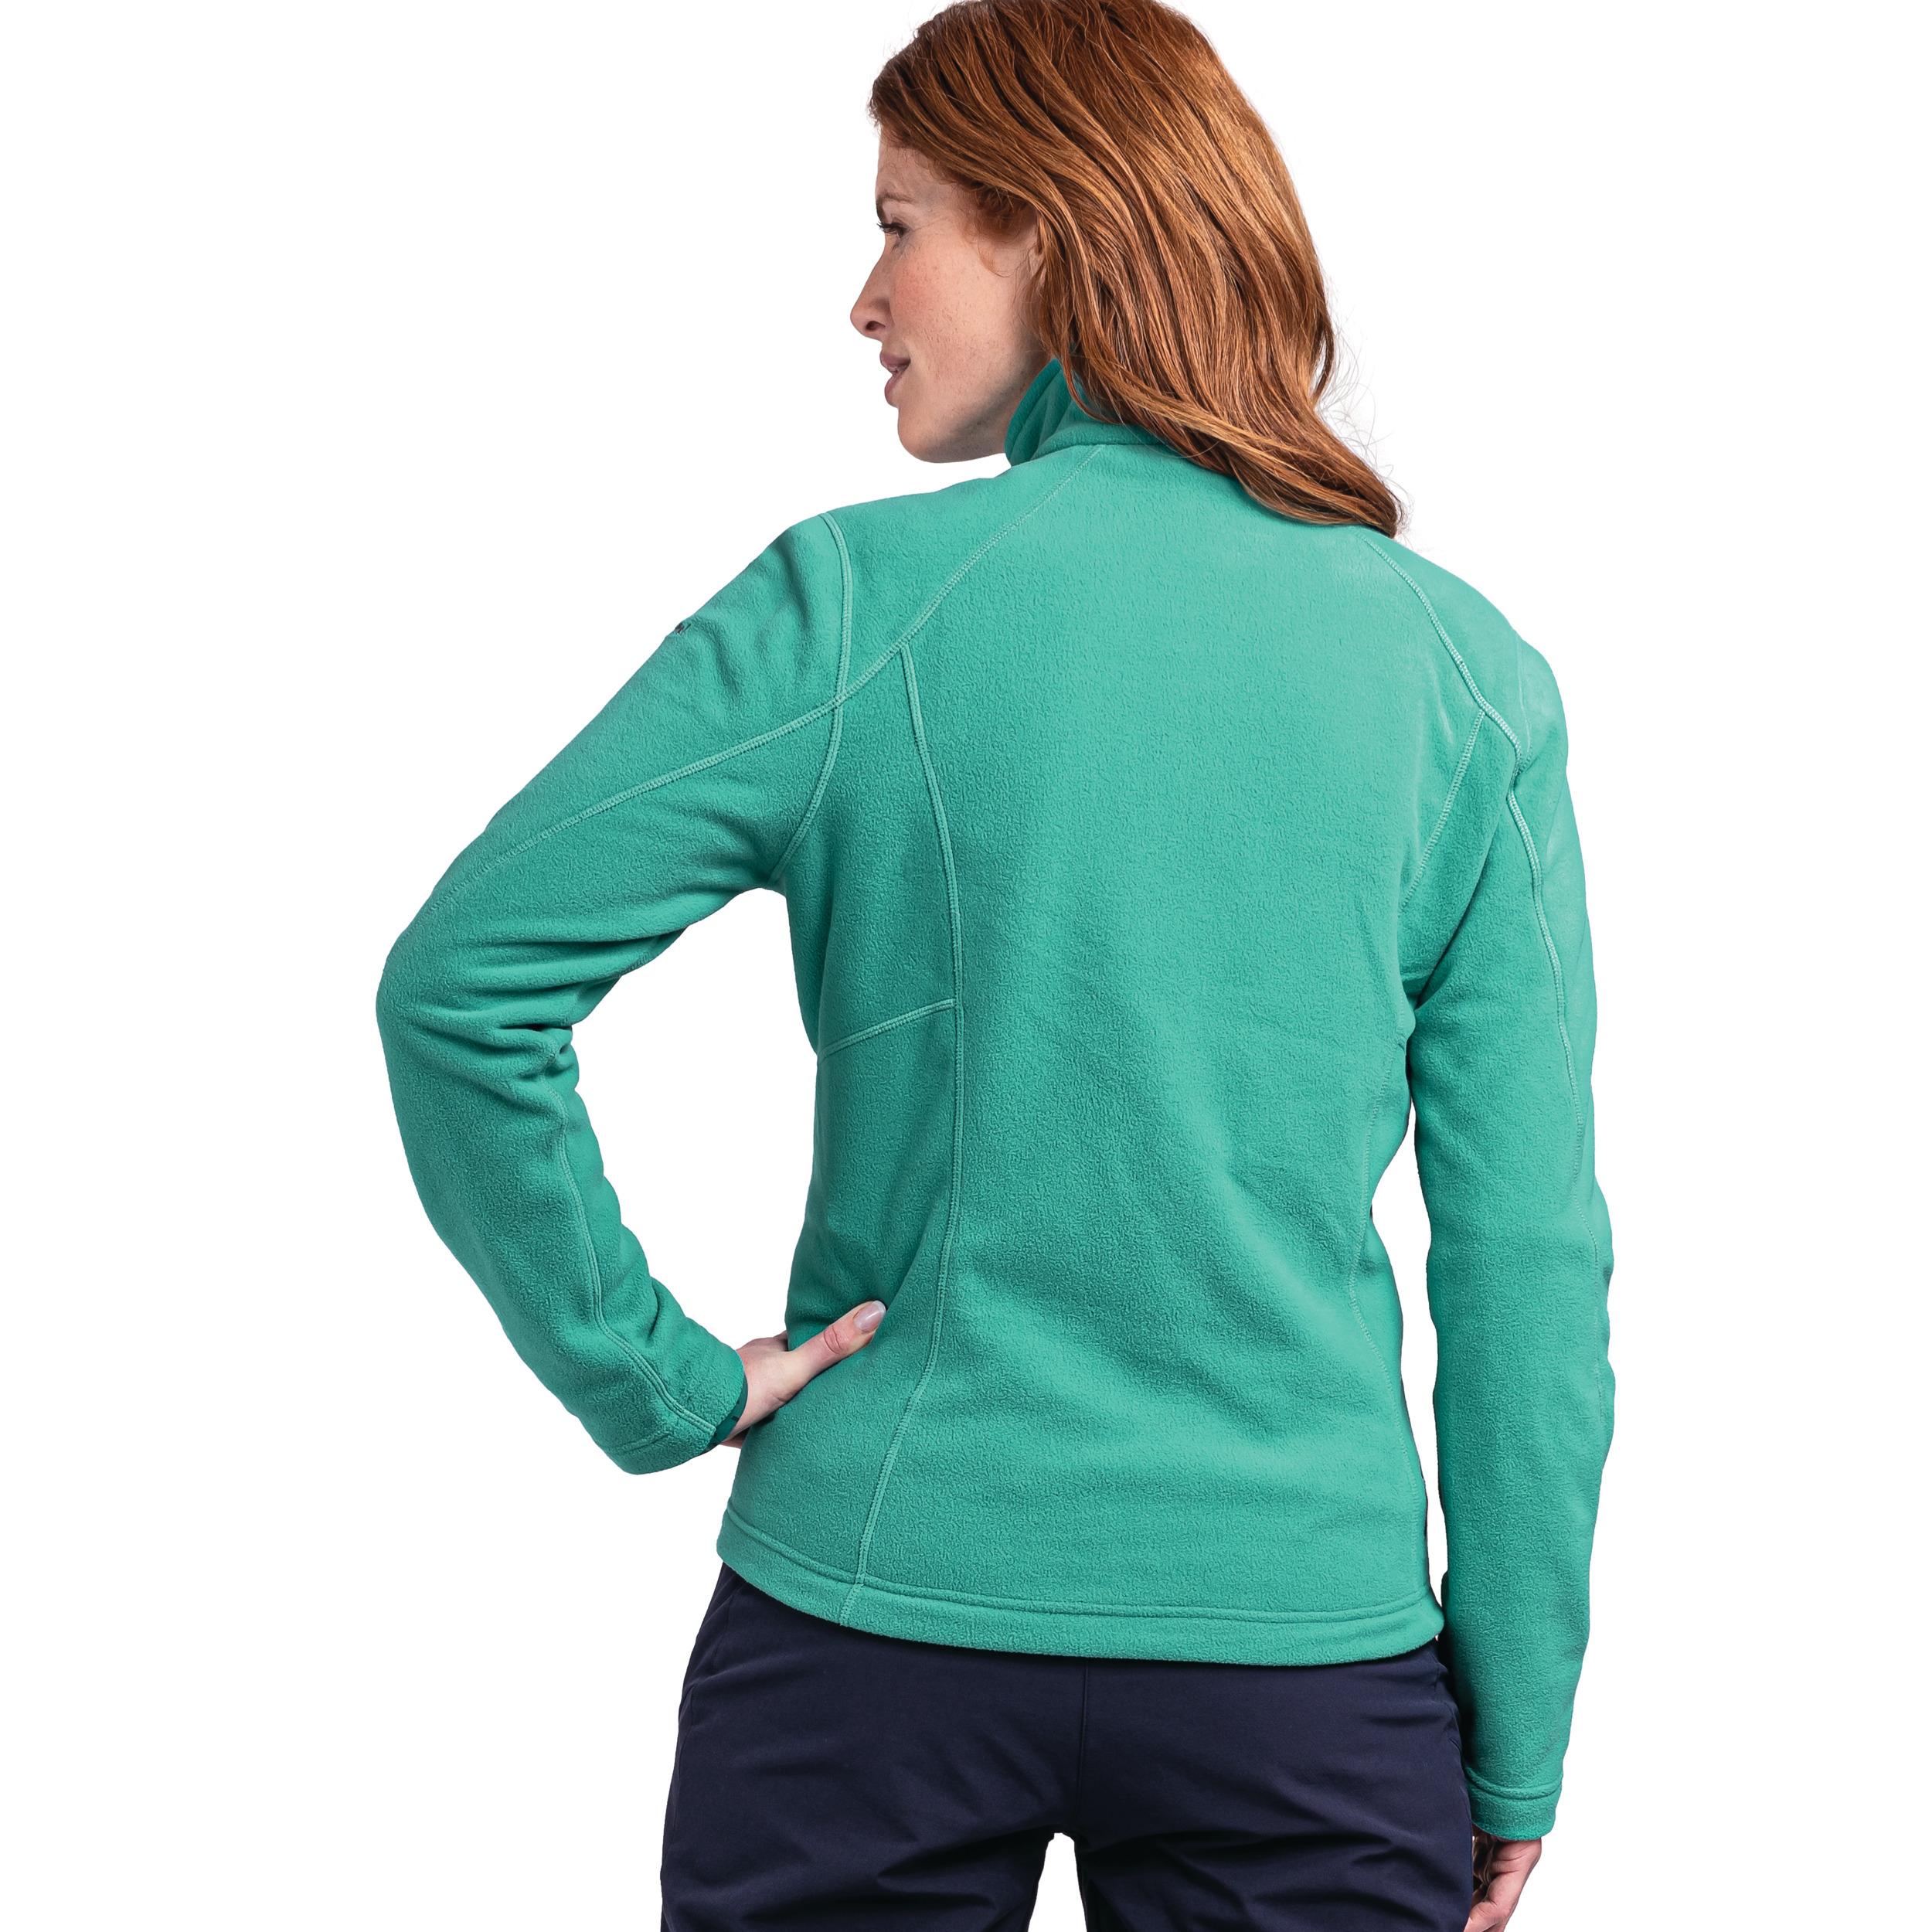 Jacket kaufen Shop Online SportScheck 7290 Fleecejacke von im Damen grün - Leona3 Fleece Schöffel